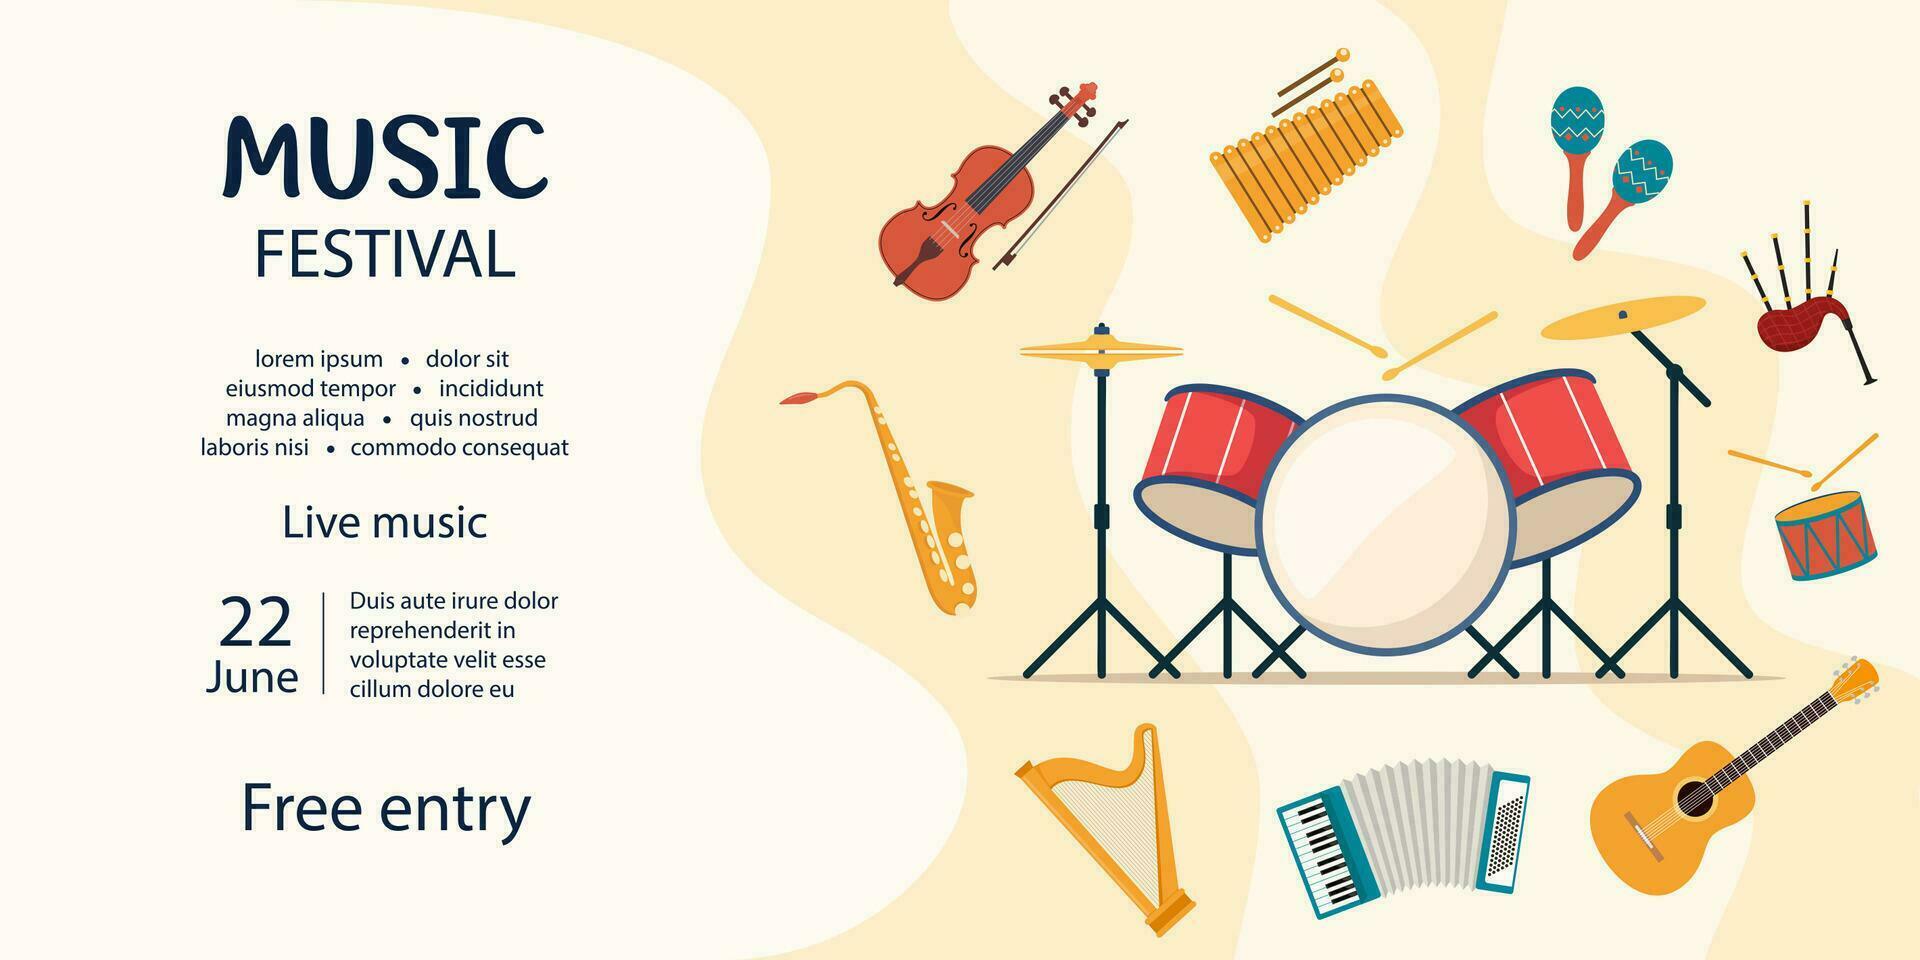 muziek- festival uitnodiging. musical instrumenten. gitaar, viool, harp, hakkebord, maracas, gitaar, trommel uitrusting, doedelzak, saxofoon. vector illustratie.